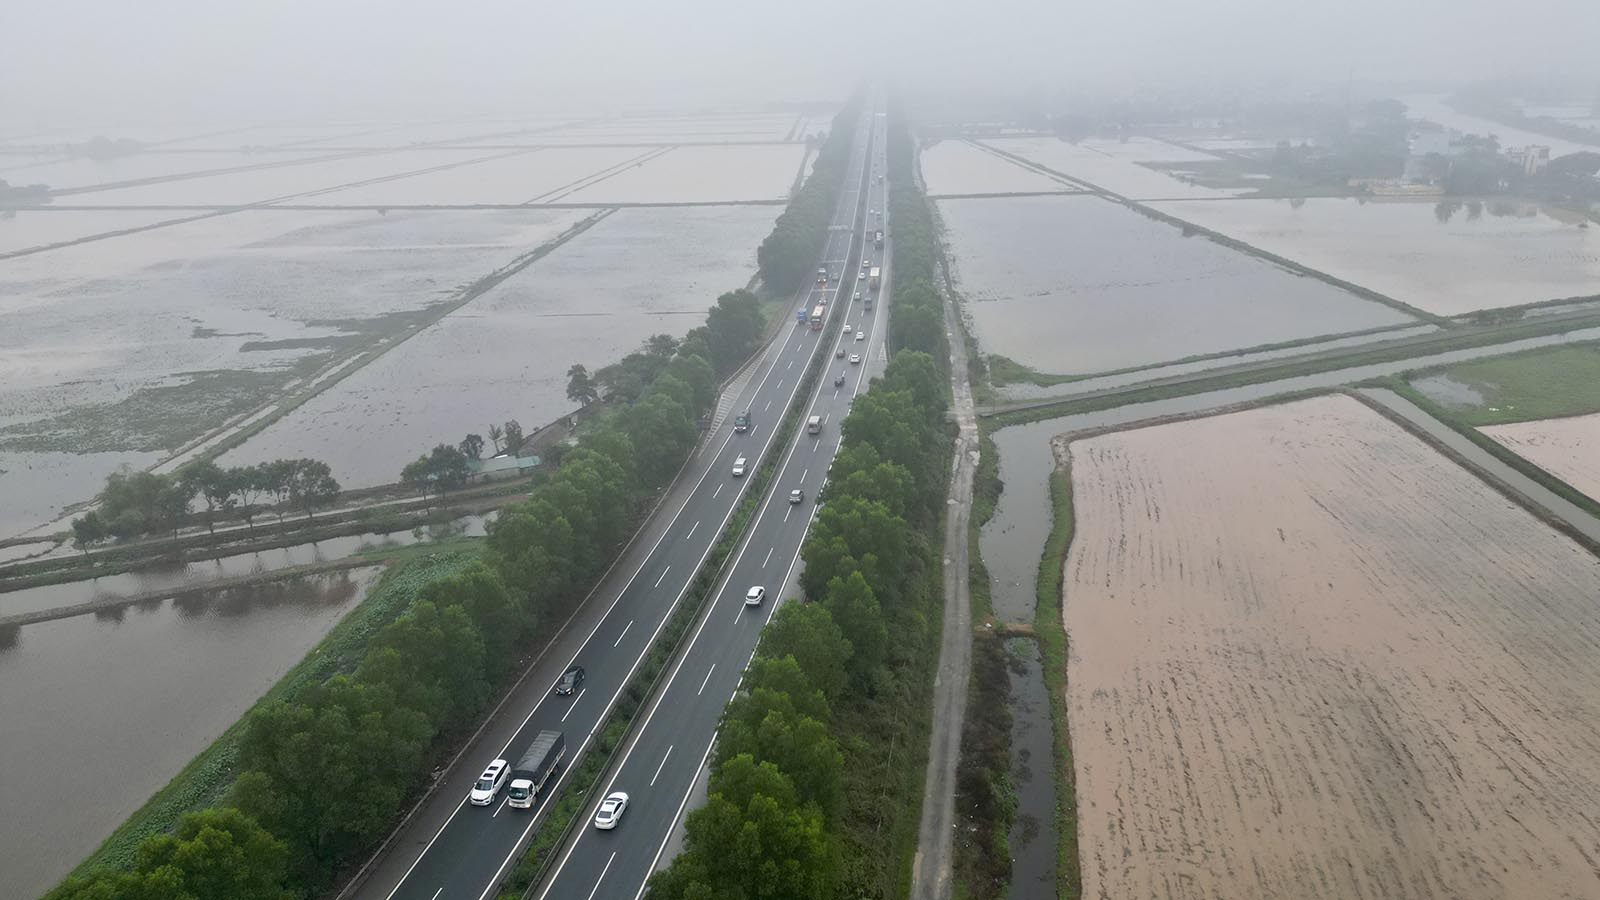 Bộ Giao thông Vận tải thống nhất sớm mở rộng cao tốc Cầu Giẽ - Ninh Bình dài 50 km từ 4 lên 6 làn xe nhằm hạn chế ùn tắc, đảm bảo tốc độ 120 km/h. 